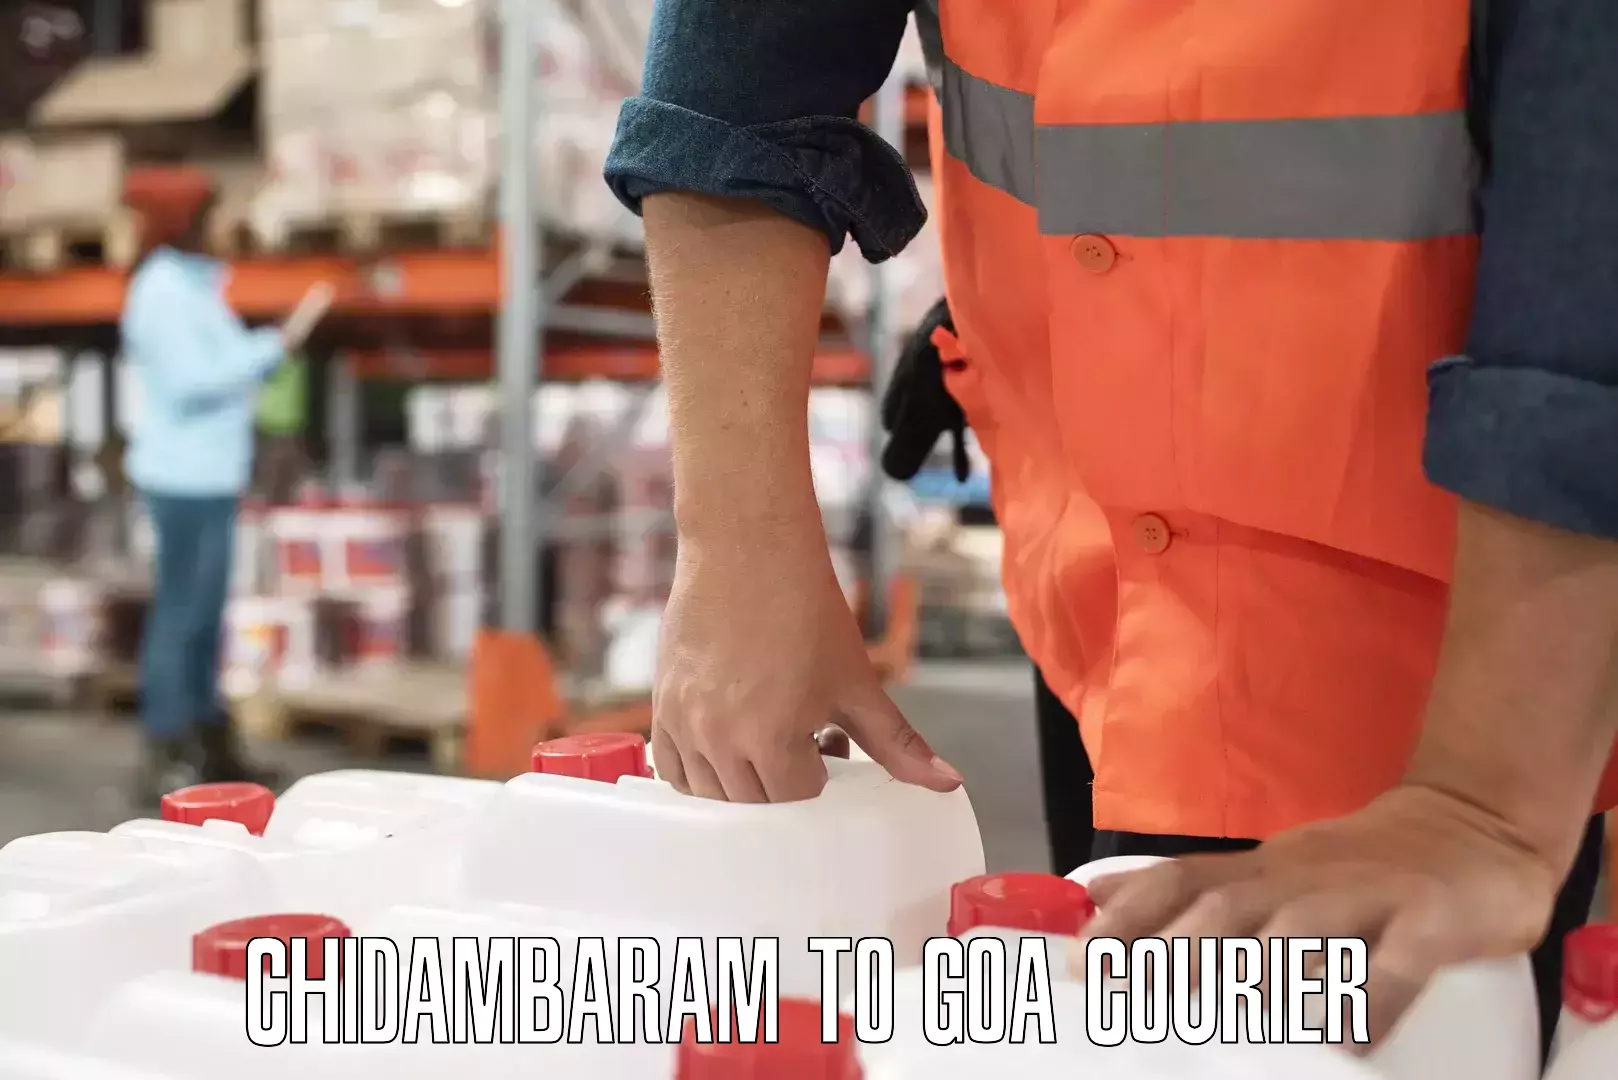 Next-generation courier services Chidambaram to Mormugao Port